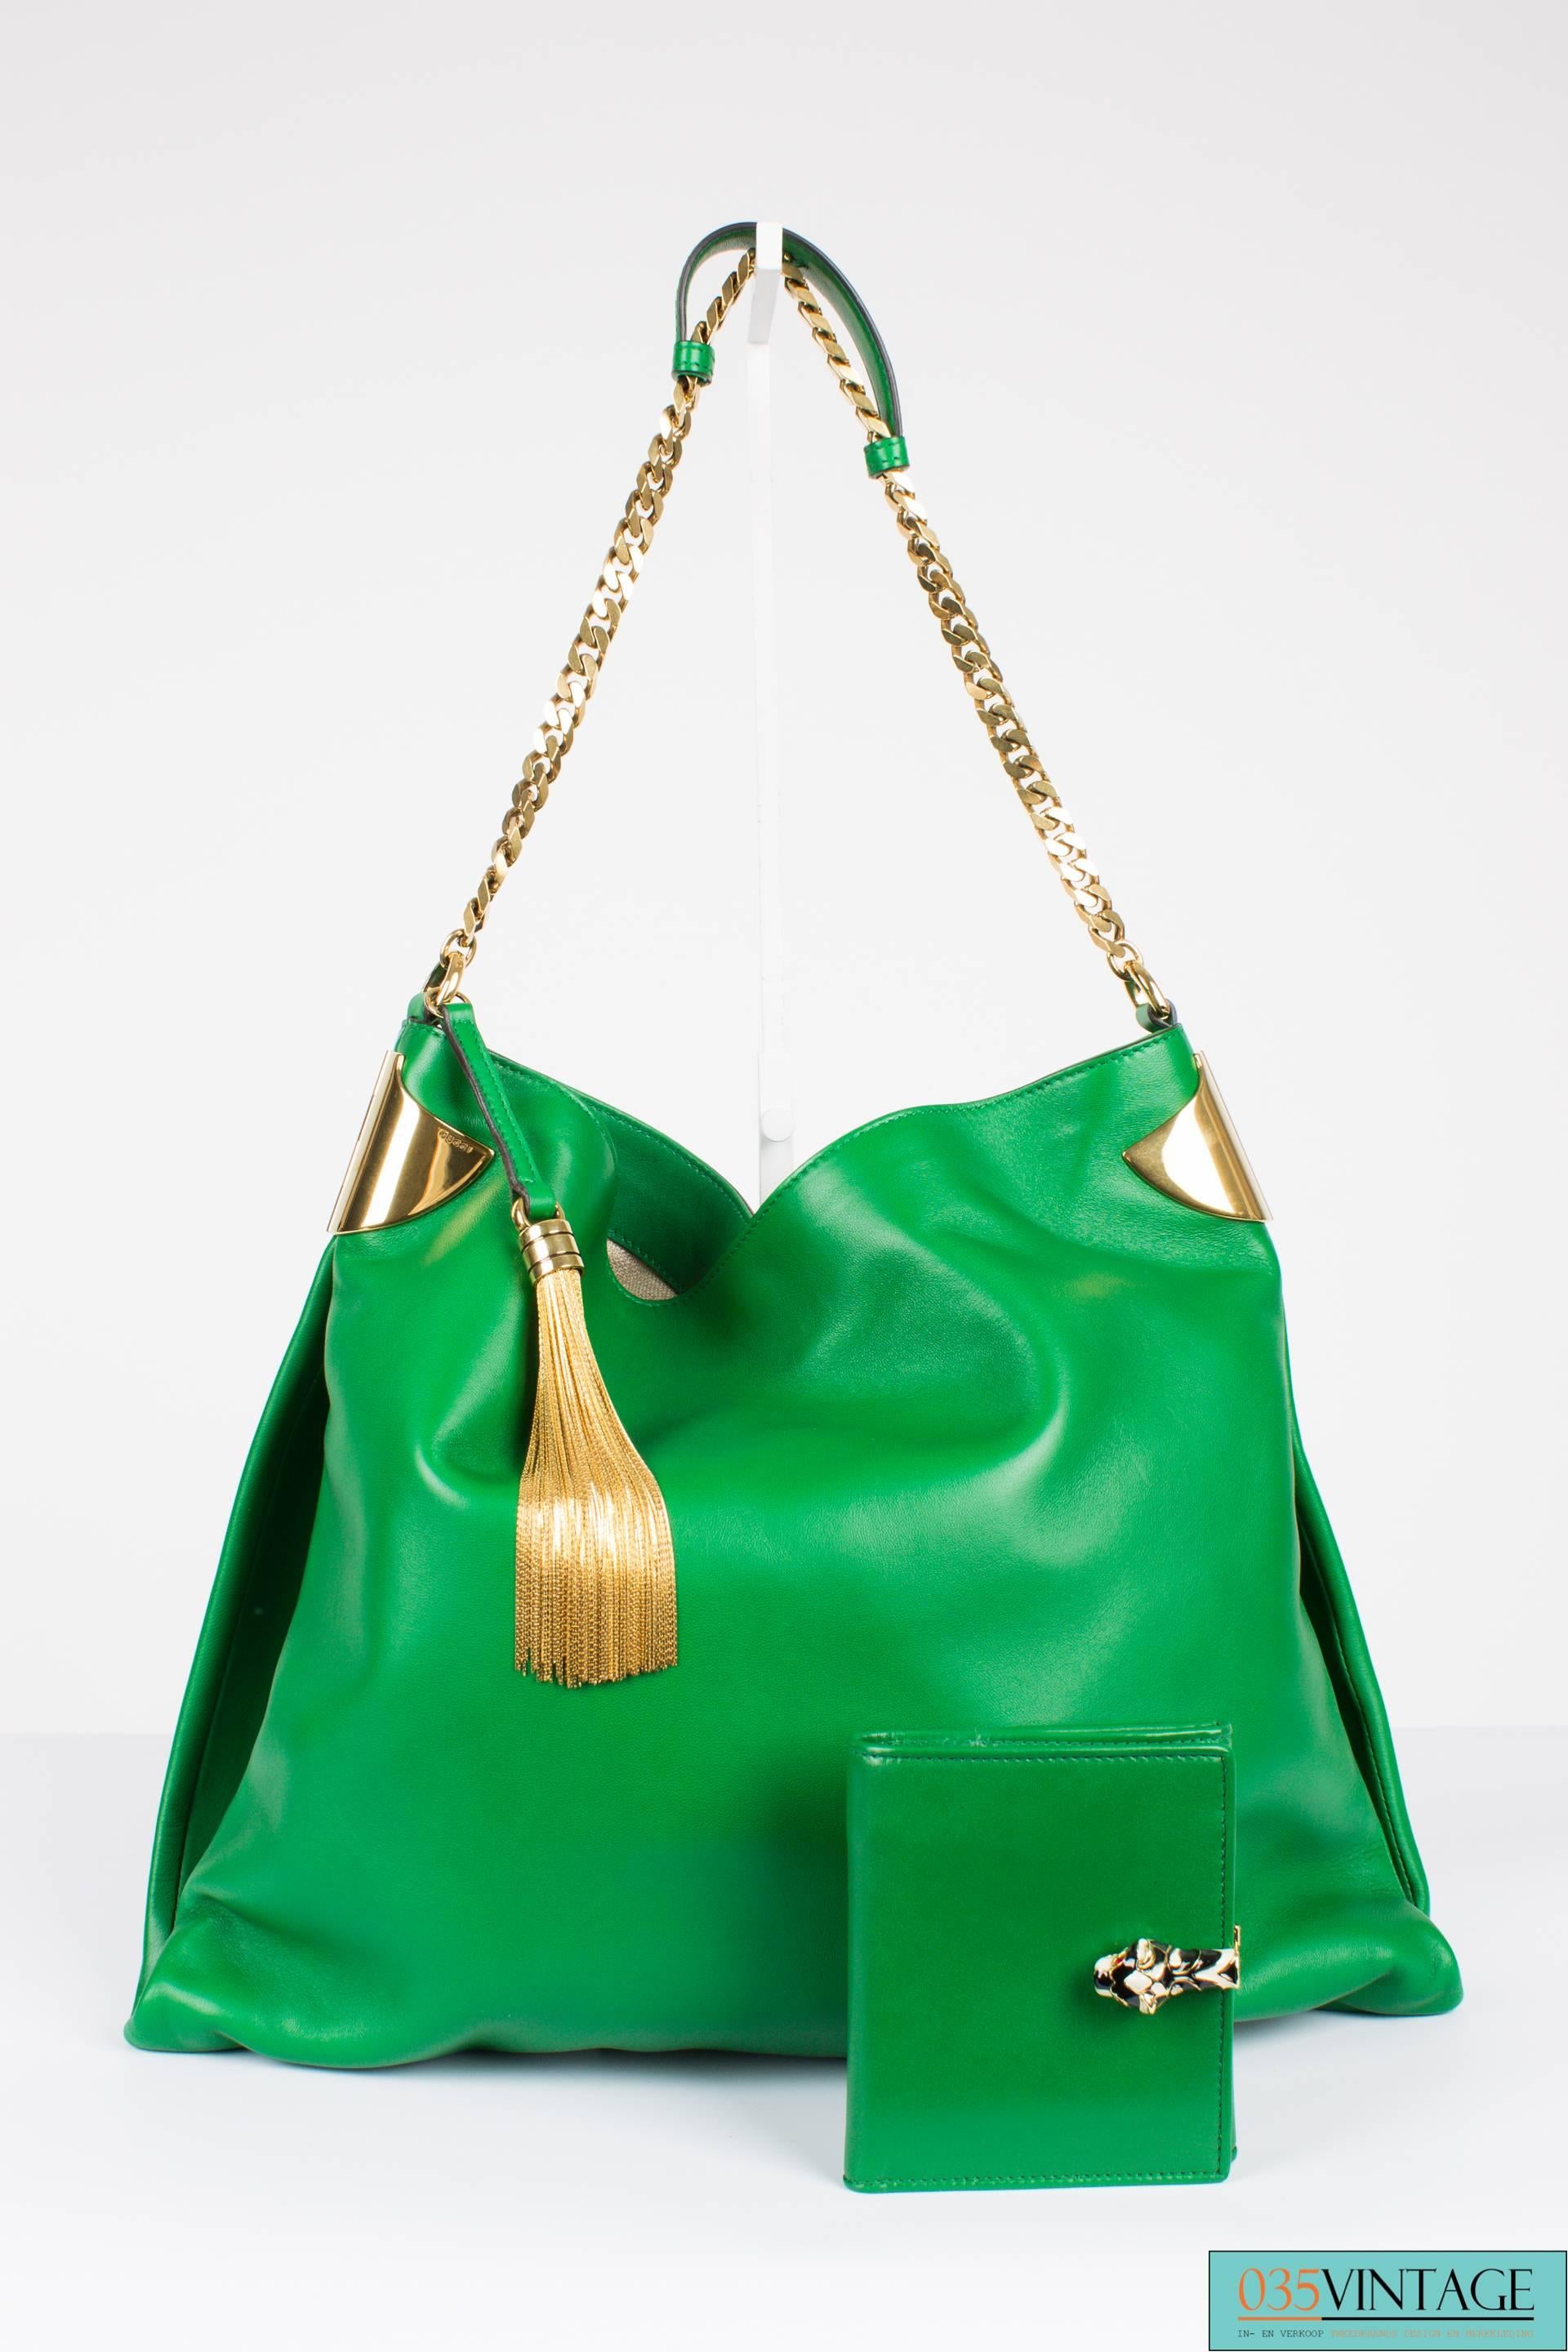 Gucci 1970 Medium Shoulder Bag - green leather/gold 1